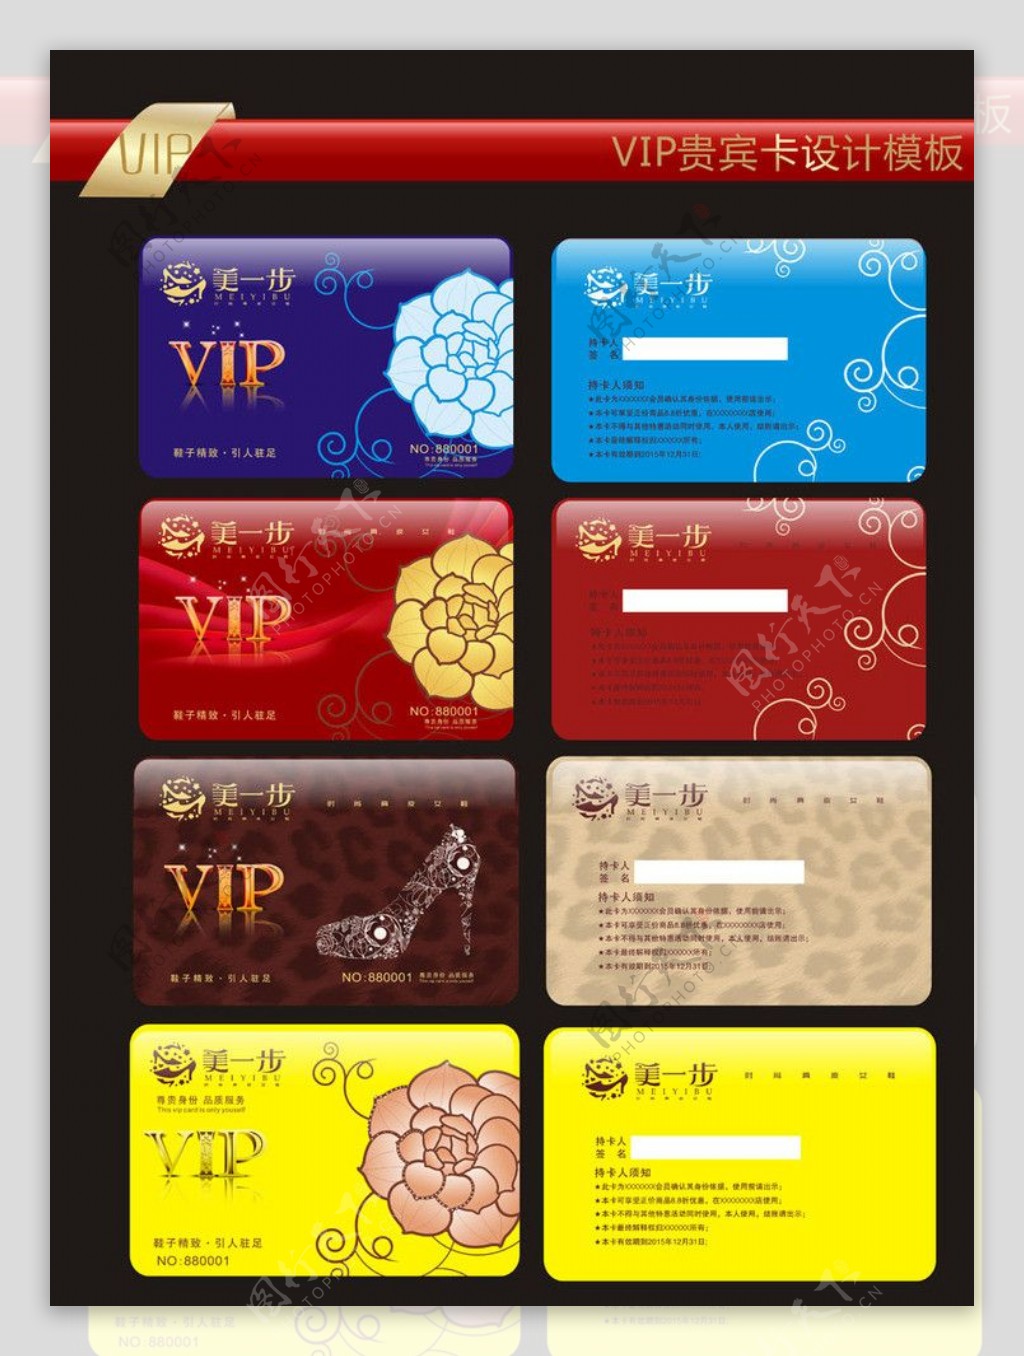 VIP卡设计模板图片